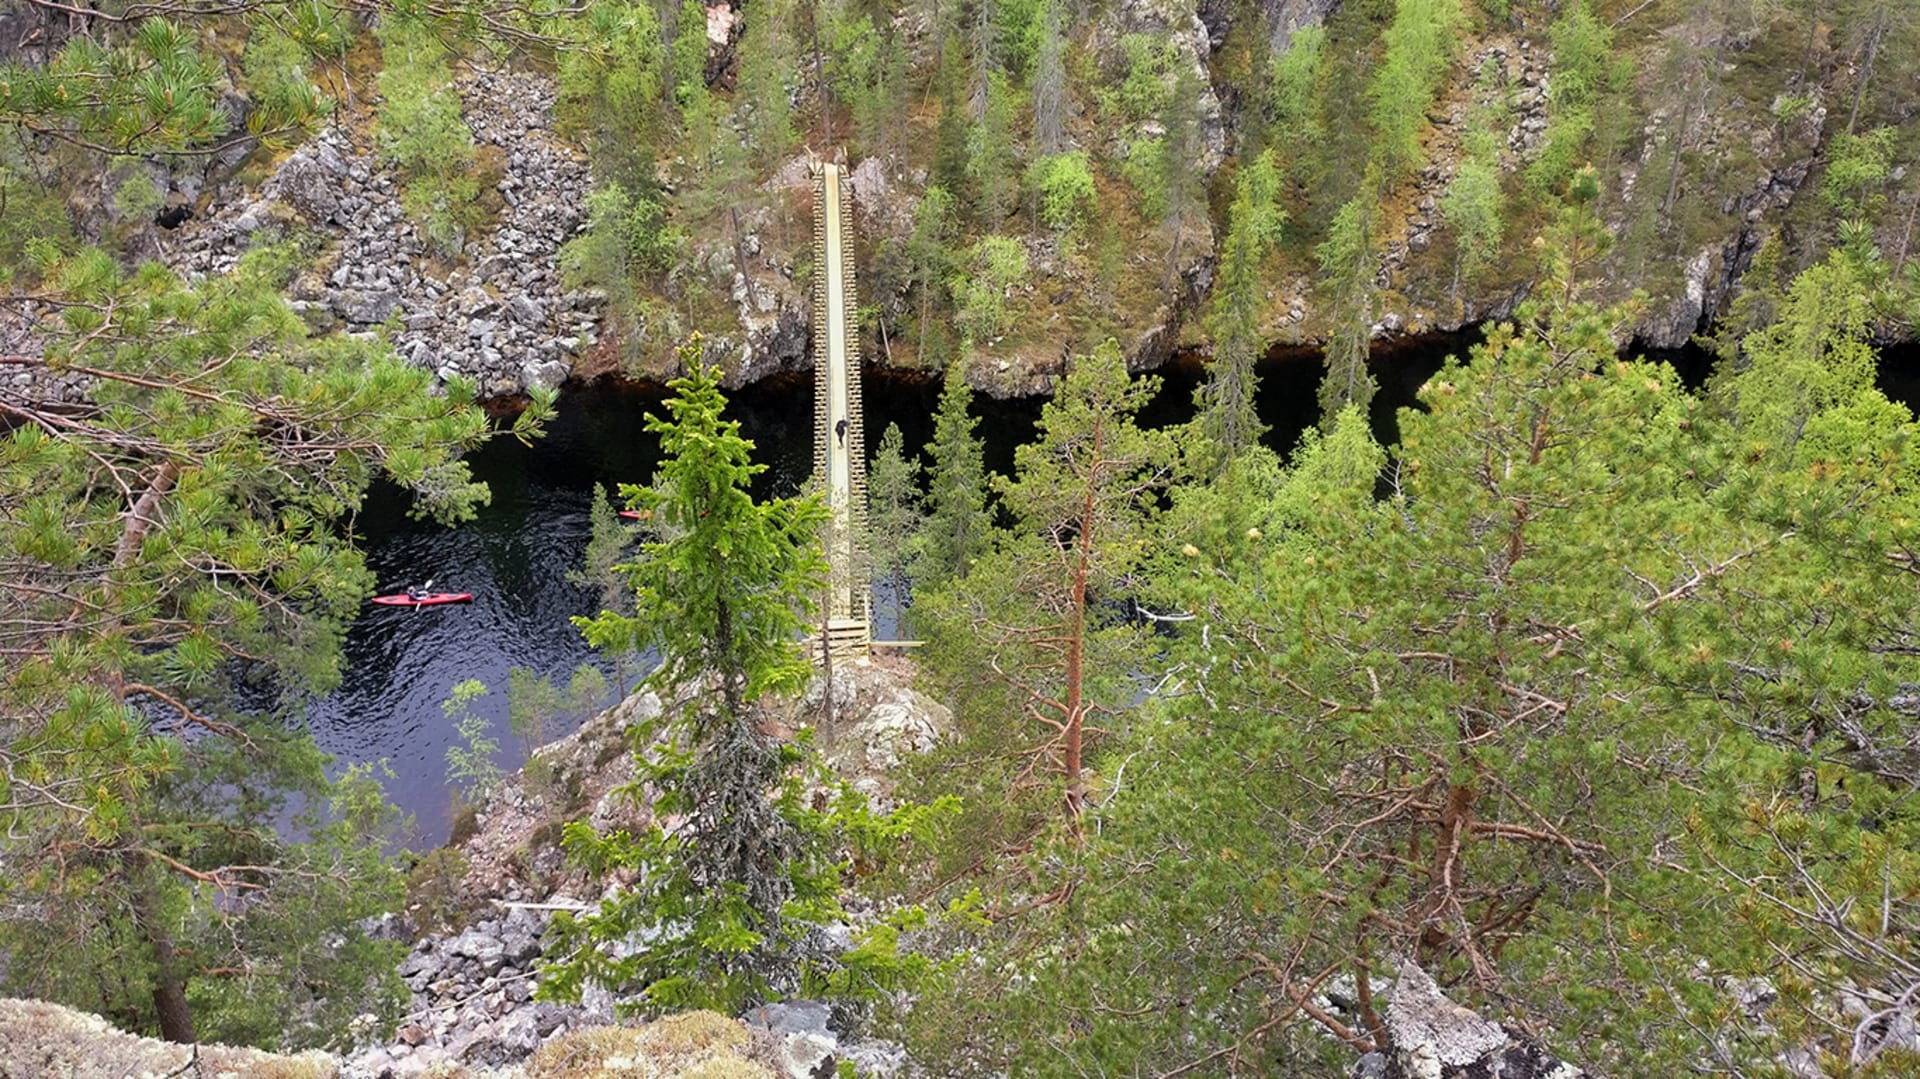 Kesäinen maisema Julma-Ölkyn kanjonista Hossan kansallispuistosta. Kallioisen kanjonin läpi kulkee riippusilta, kanjonin pohjalla järvi. Kuva: Elina Odé